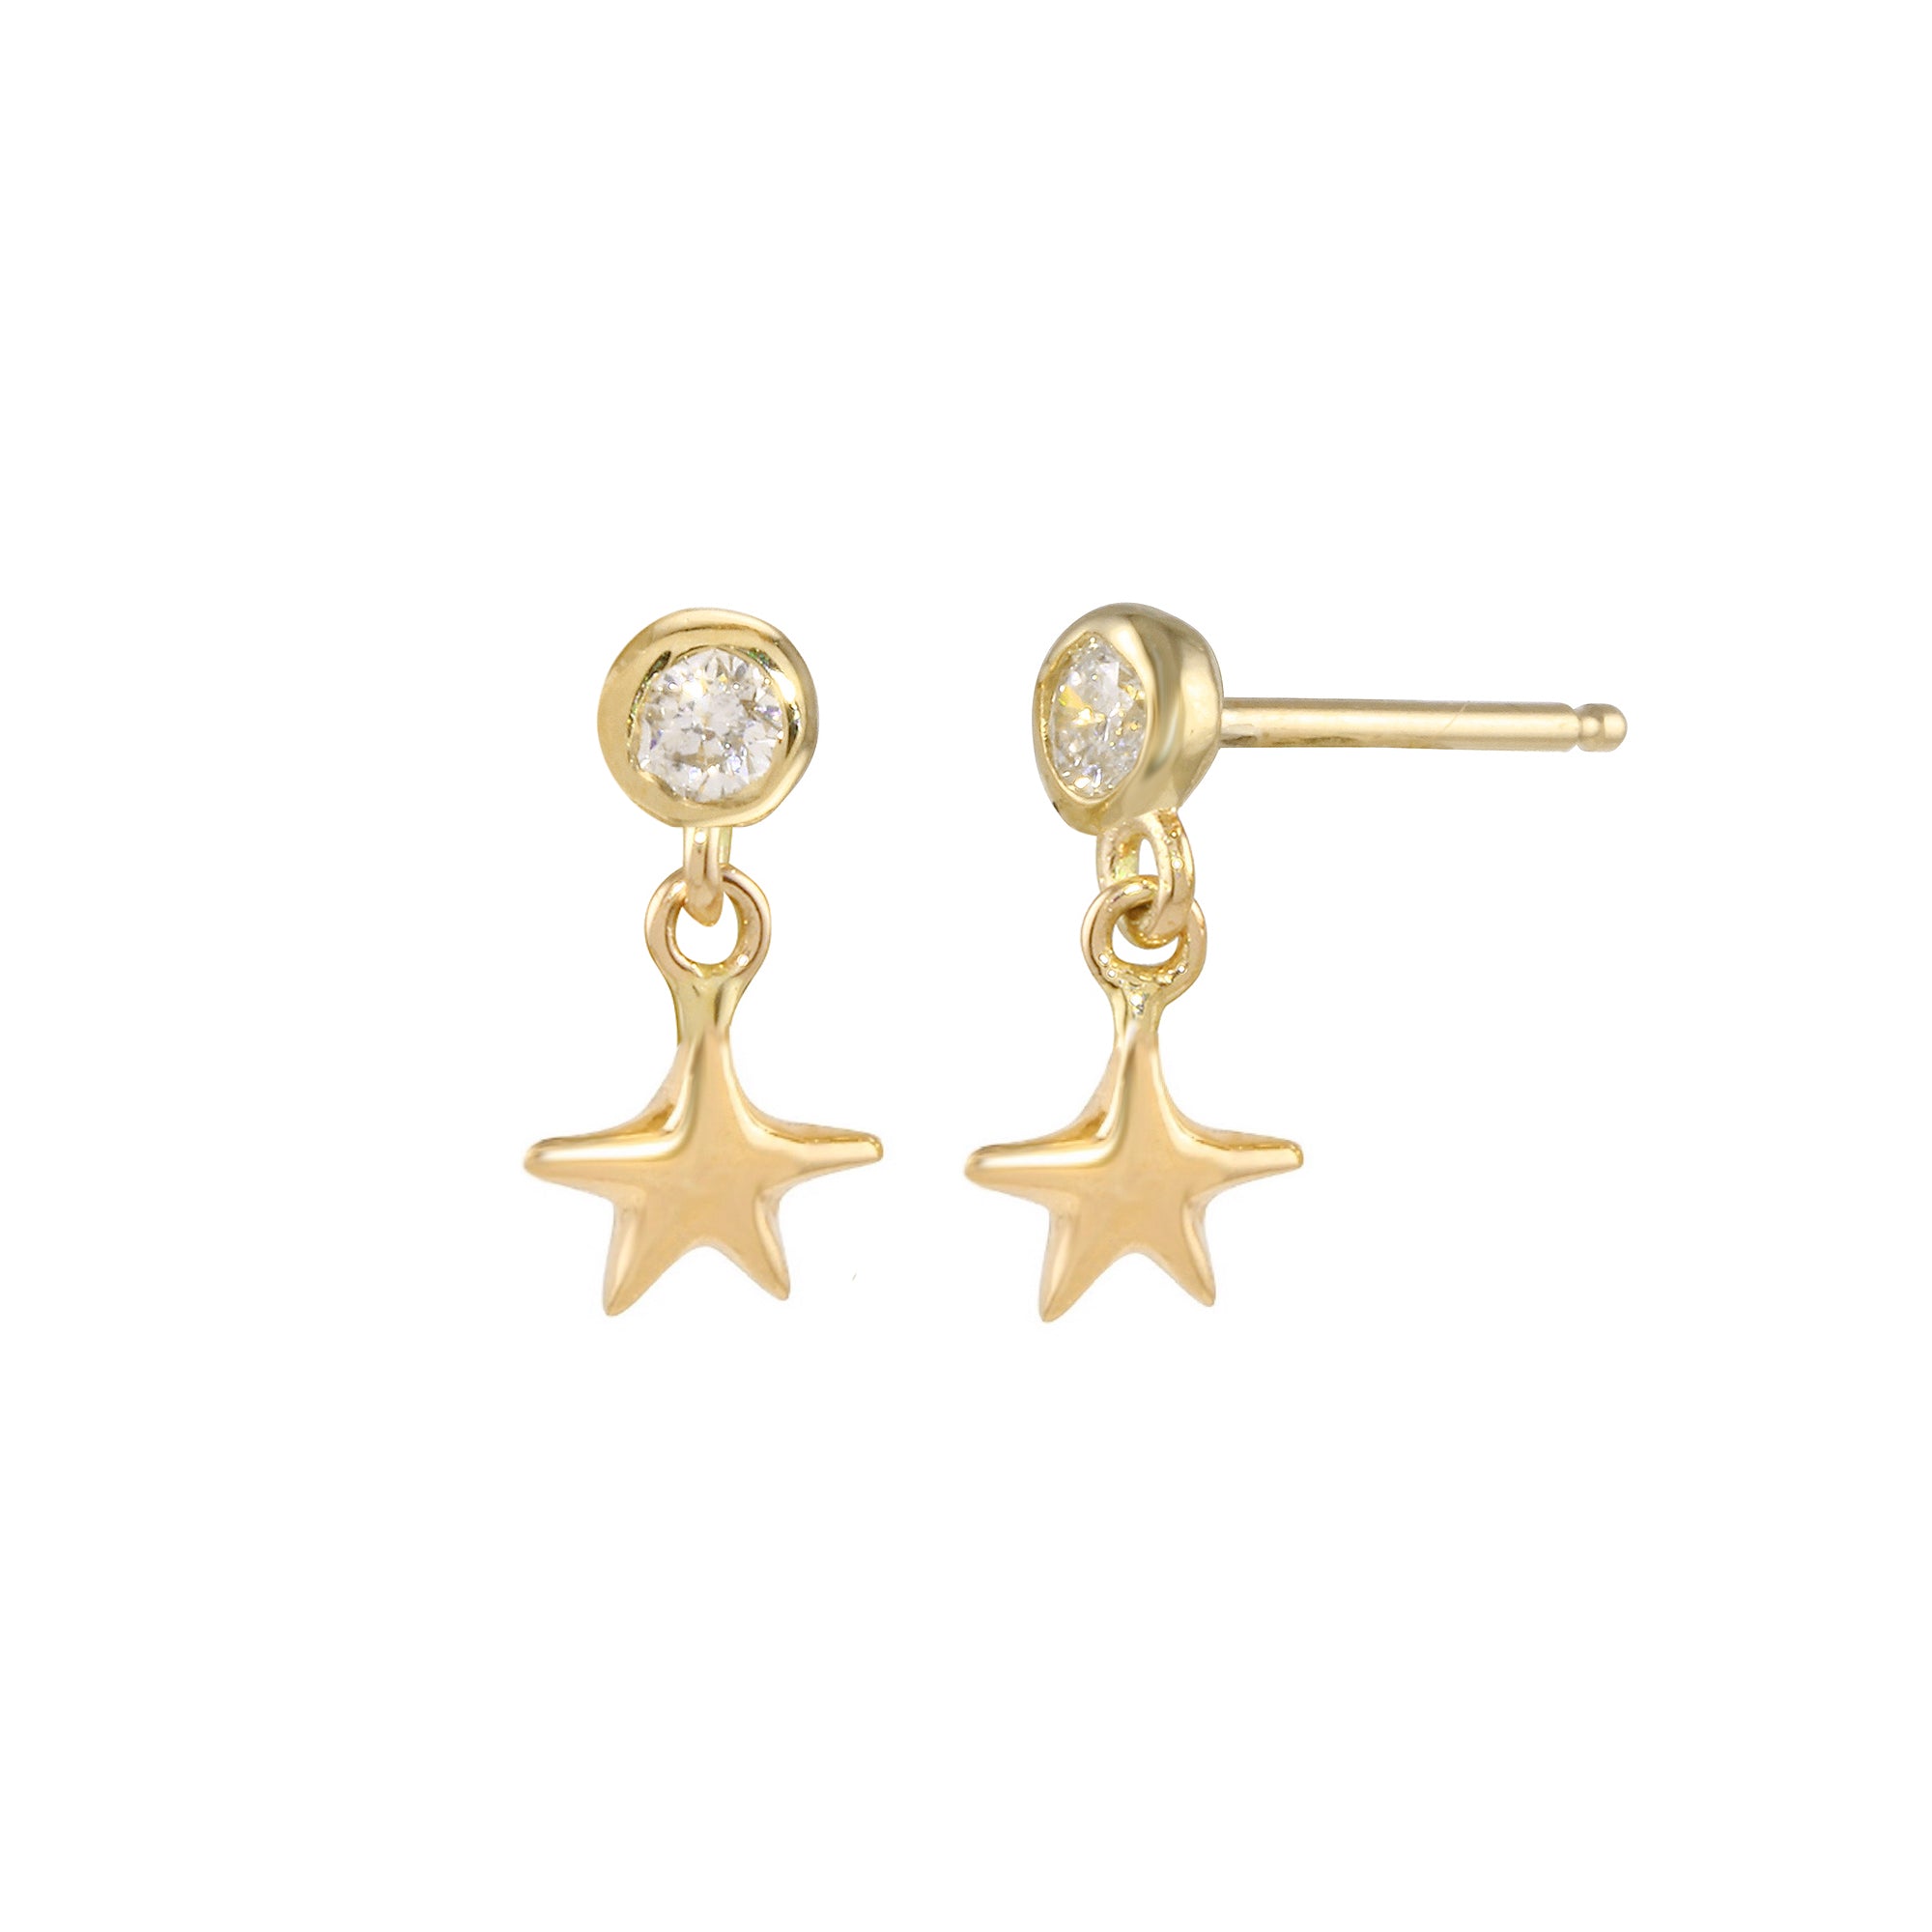 Star Dangle Earring Drop Earrings Jaine K Designs Without Diamond Bezel Yellow Gold 